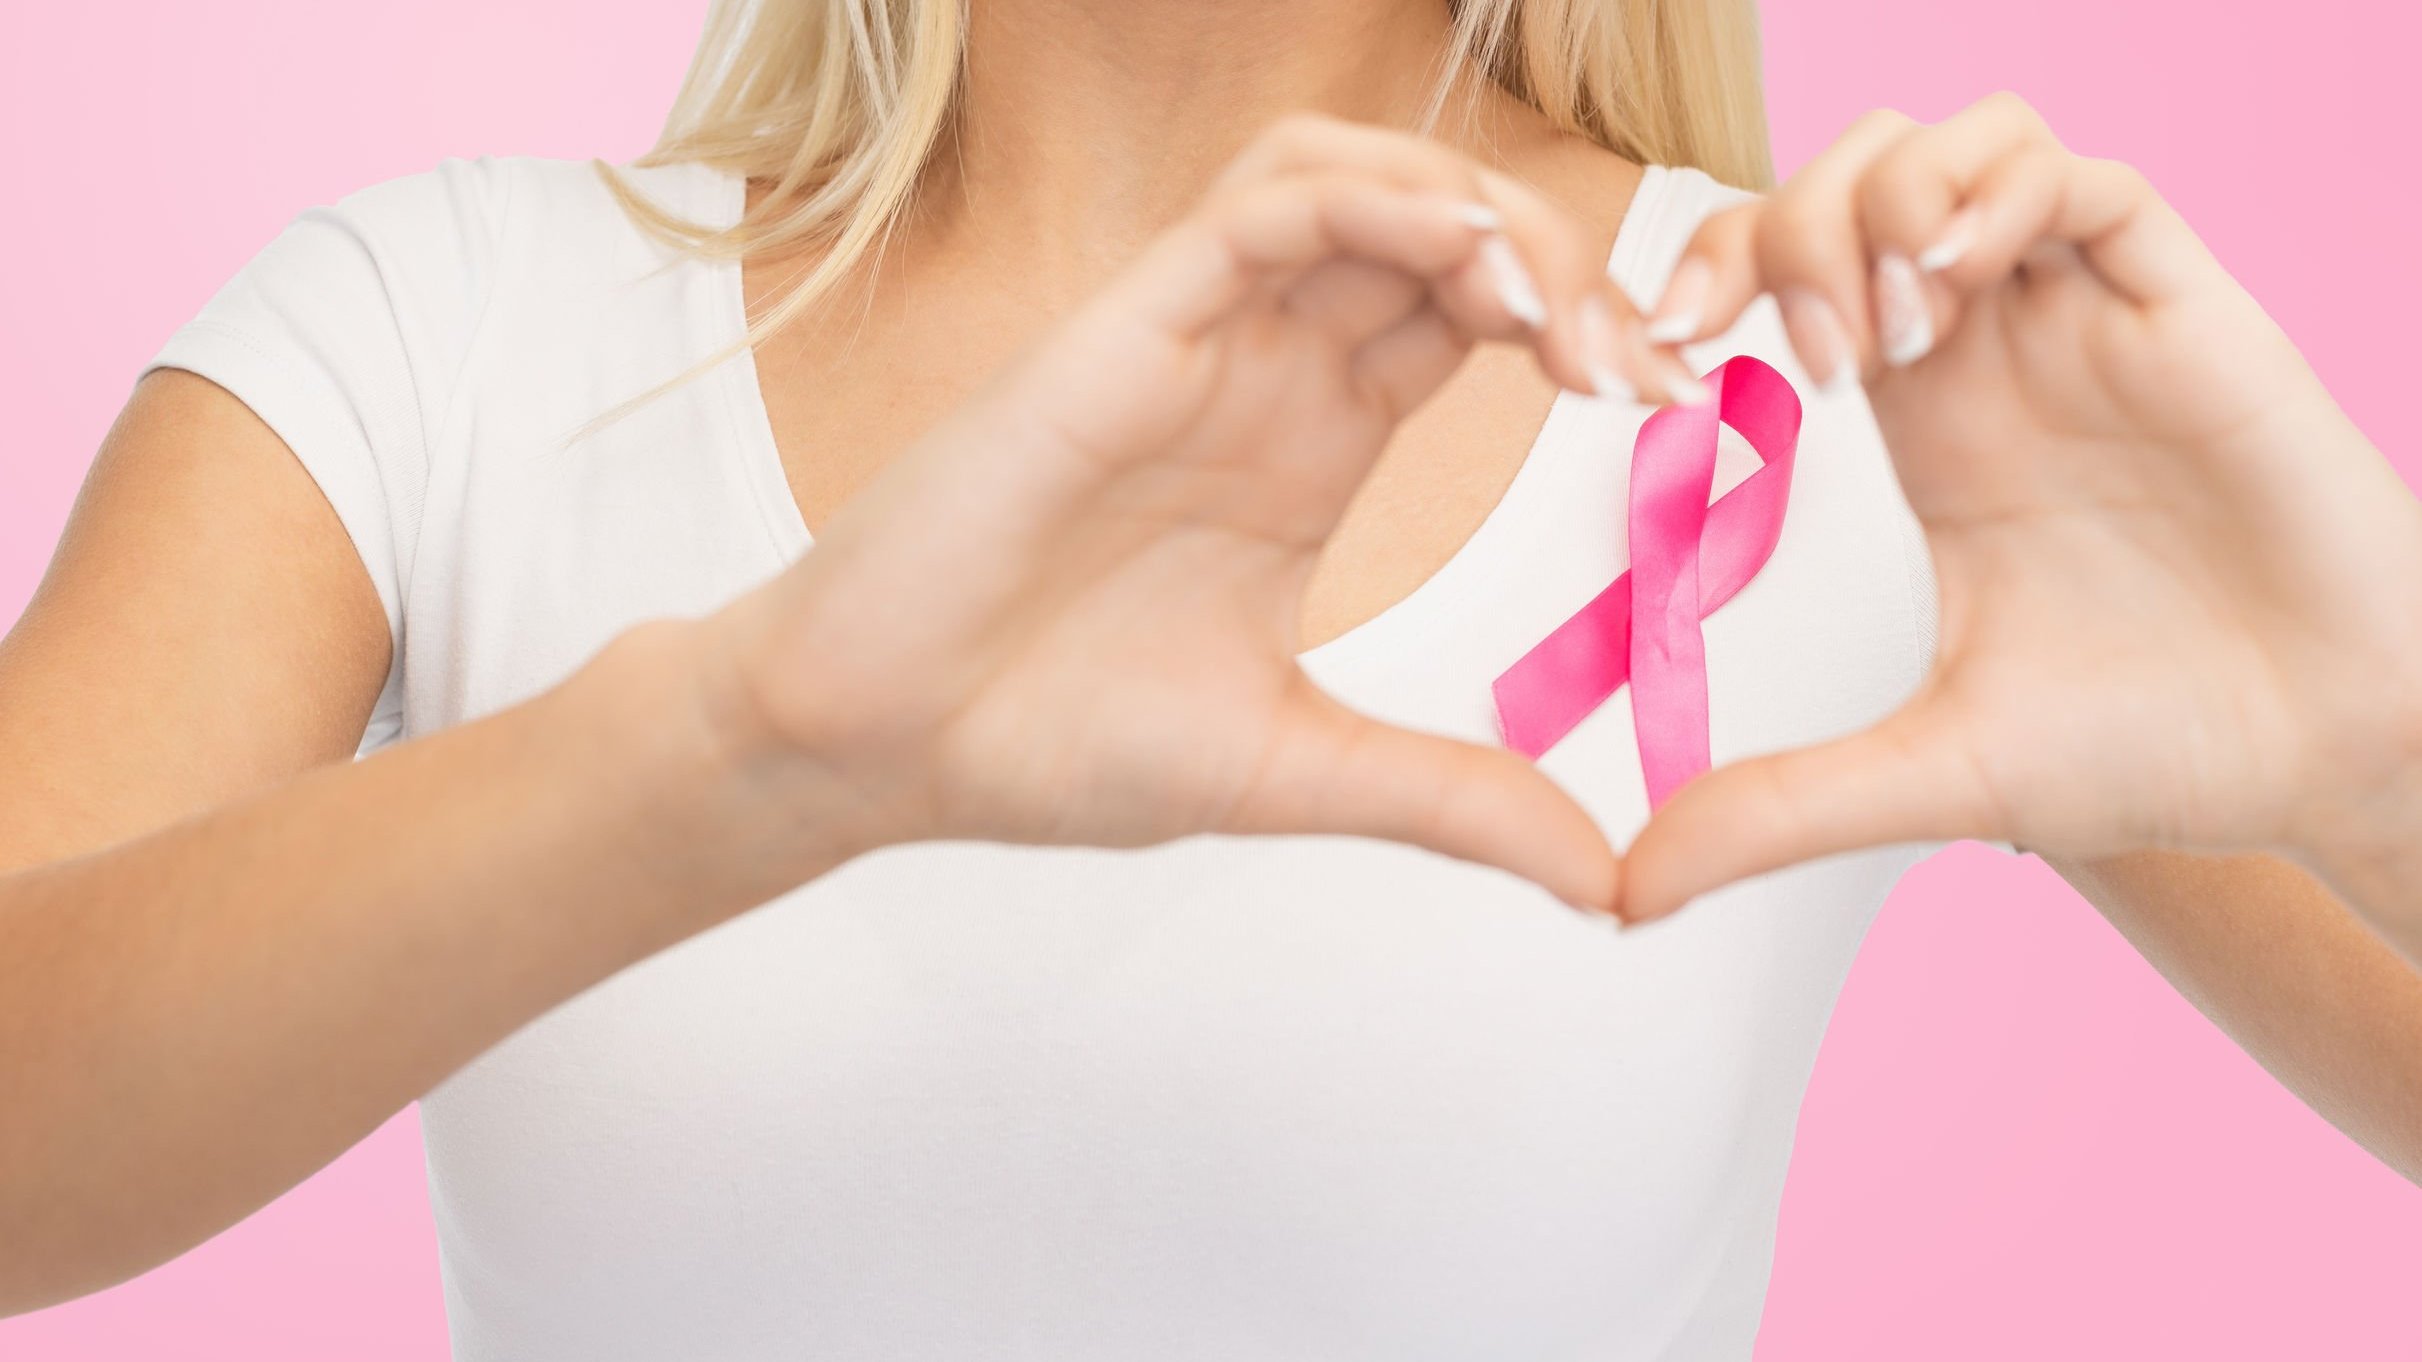 jovem com uma camiseta branca, lisa, e uma fita de conscientização do câncer de mama, mostrando o formato de um coração sobre um fundo rosa